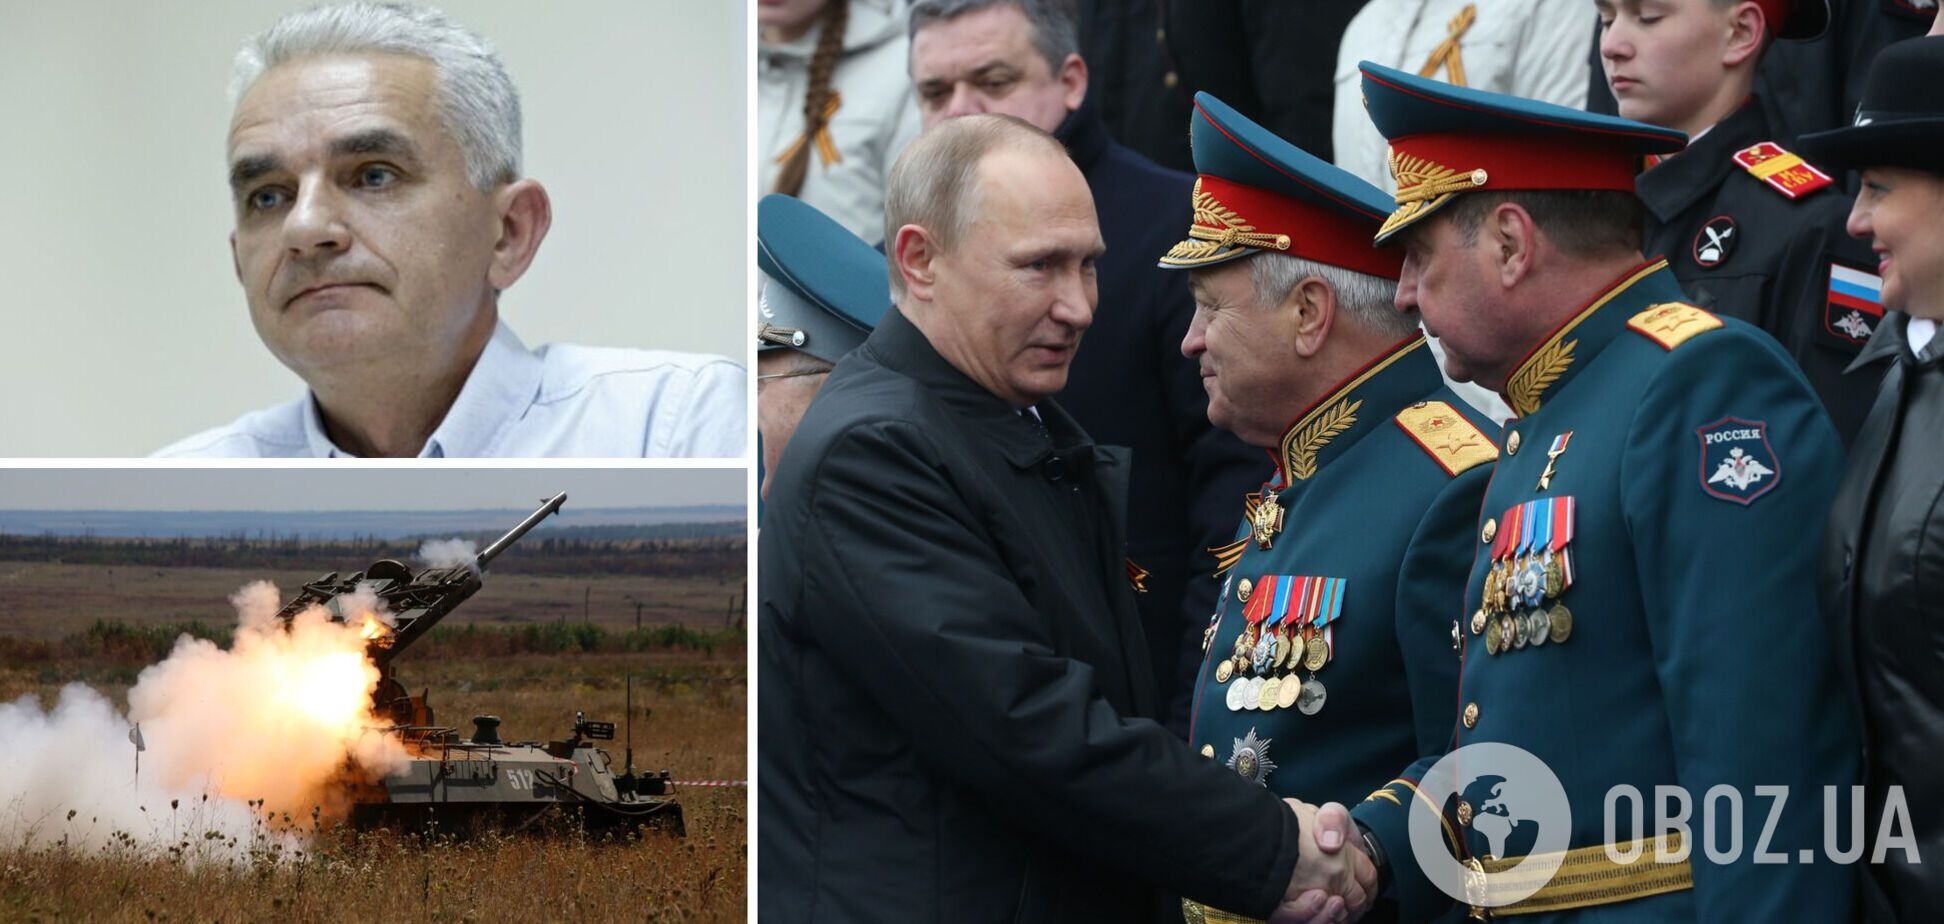 Военный эксперт Мельник: битва за Донбасс будет горячей, Путин мечтает о параде 9 мая в Киеве. Интервью